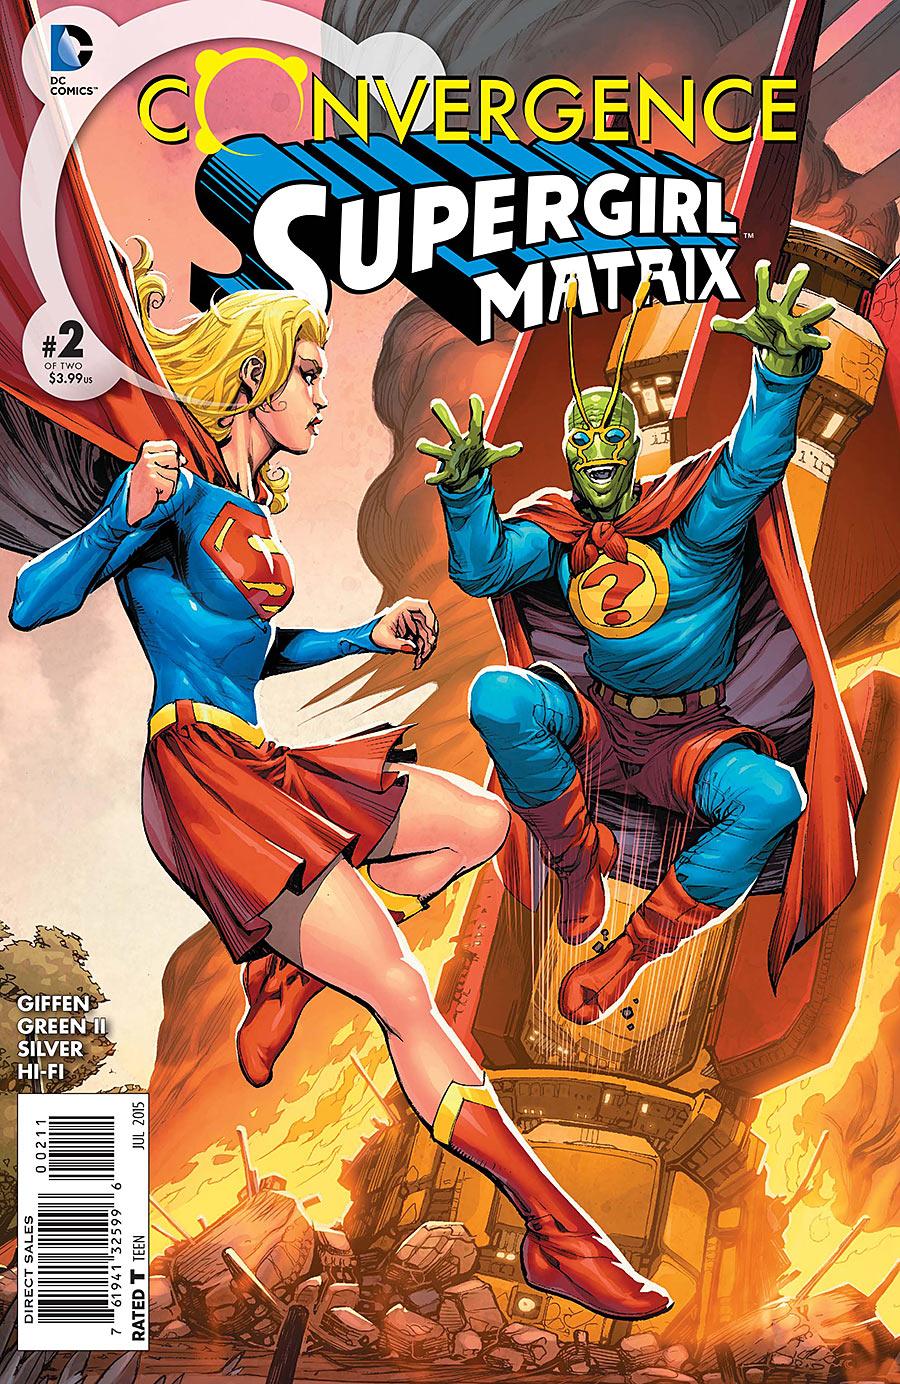 Convergence: Supergirl: Matrix Vol. 1 #2